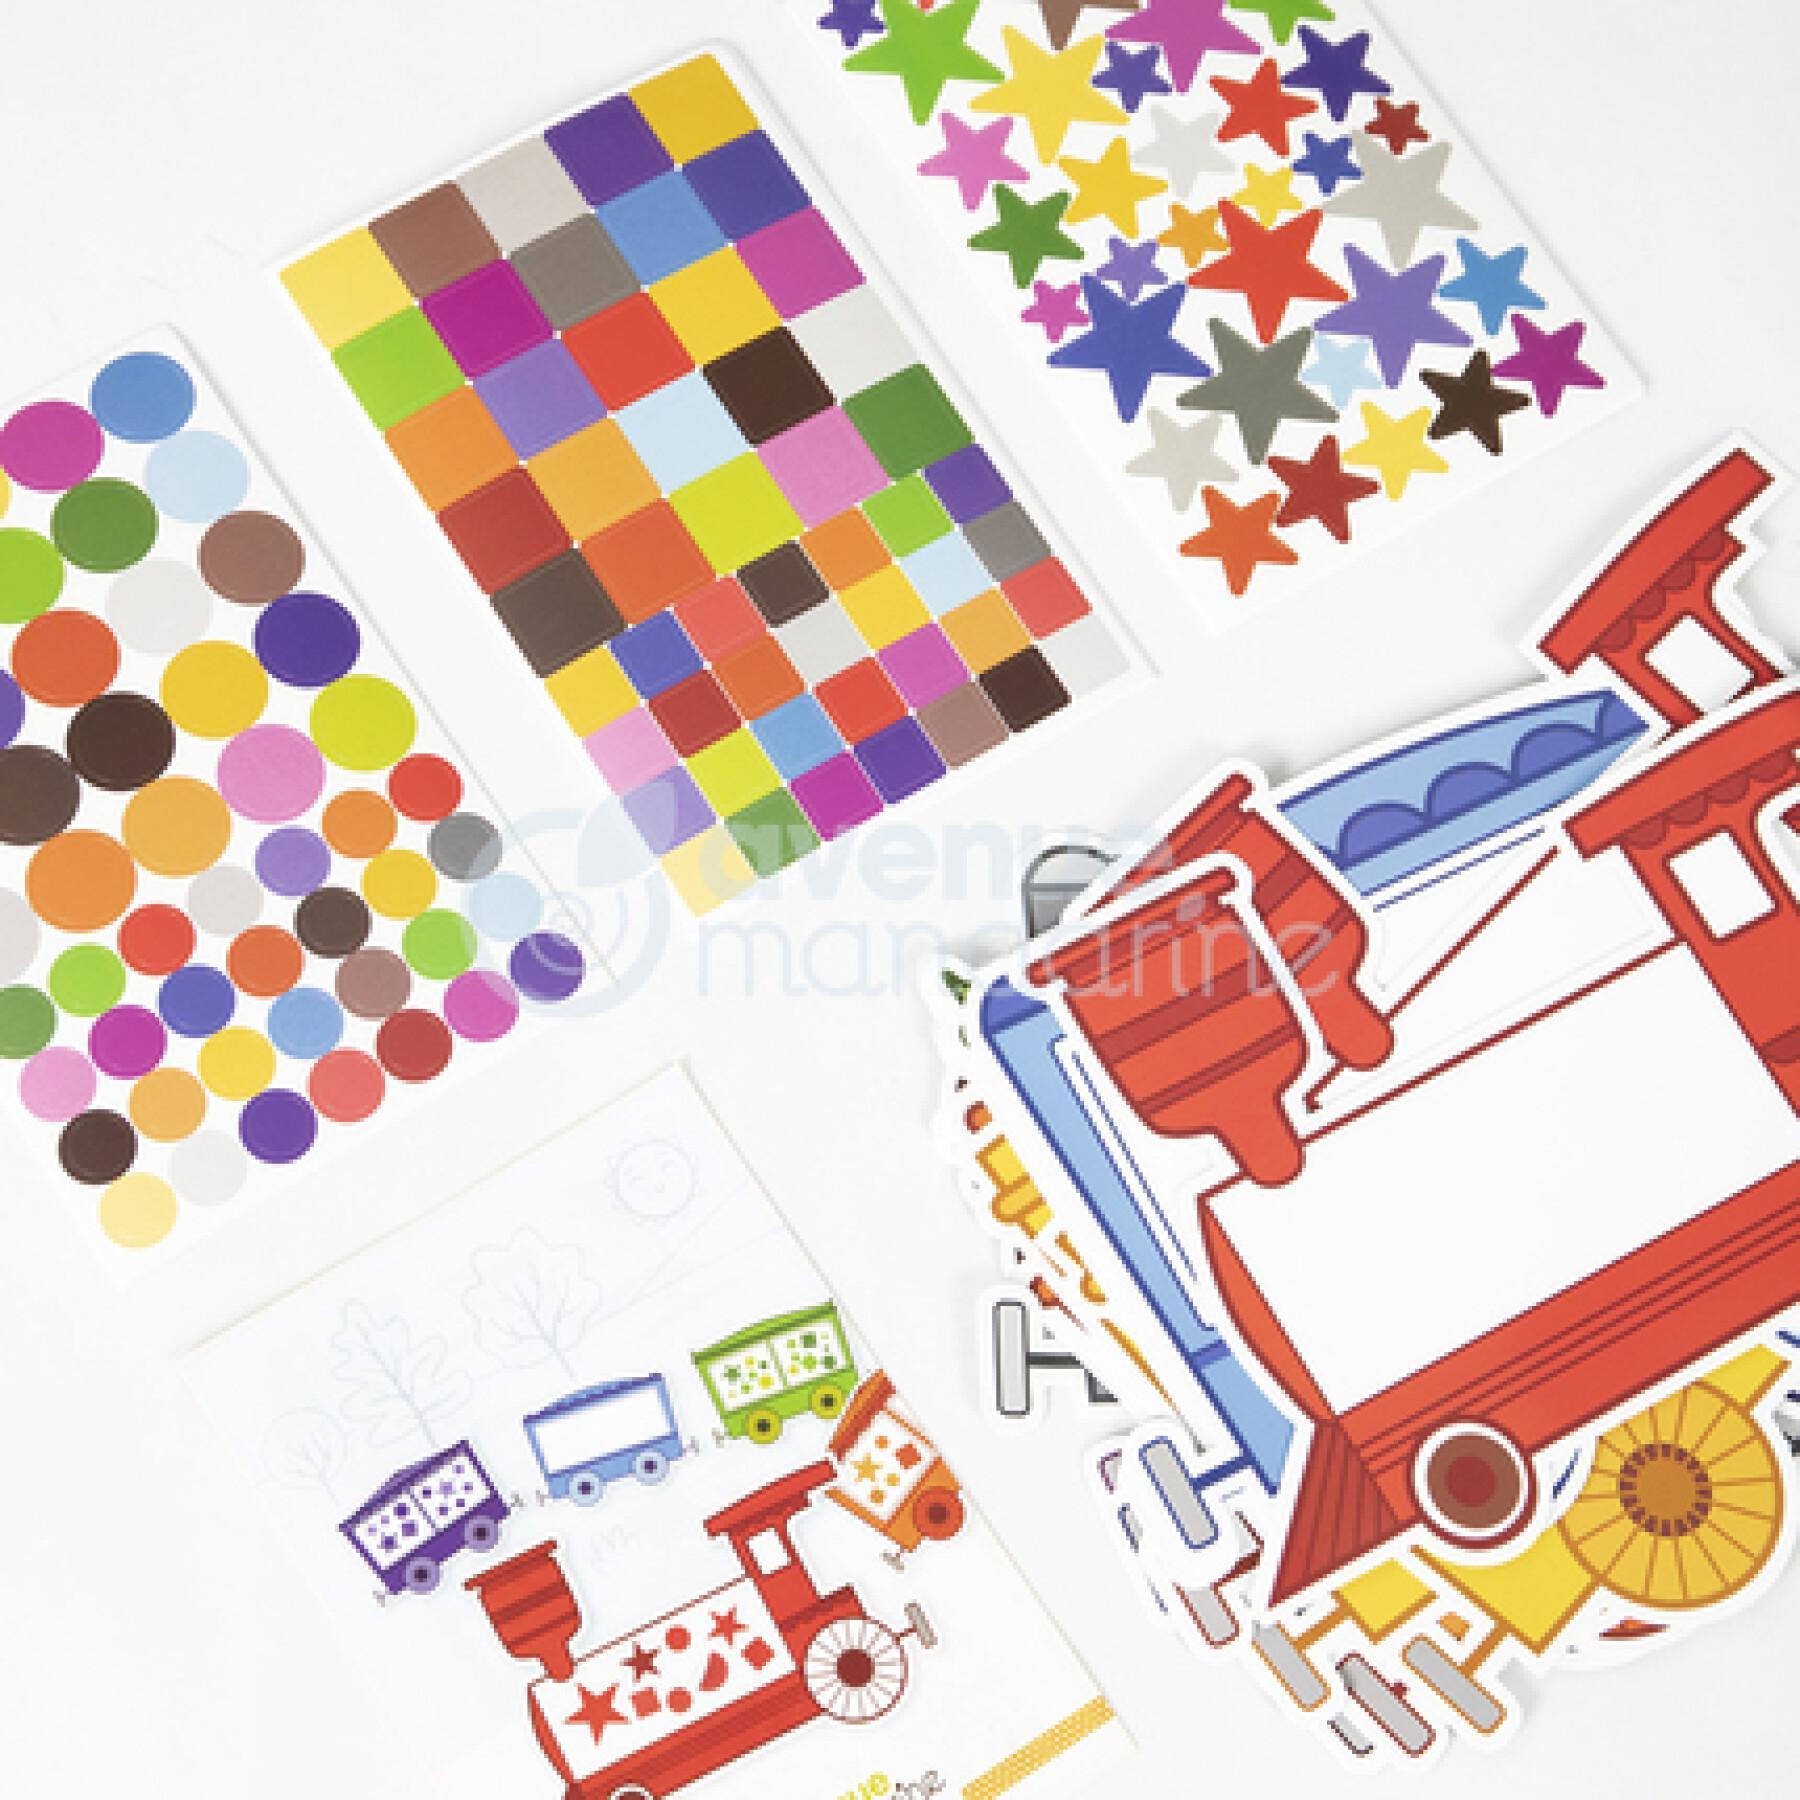 Caixa criativa - autocolantes "educativ" classificação de cores Avenue Mandarine